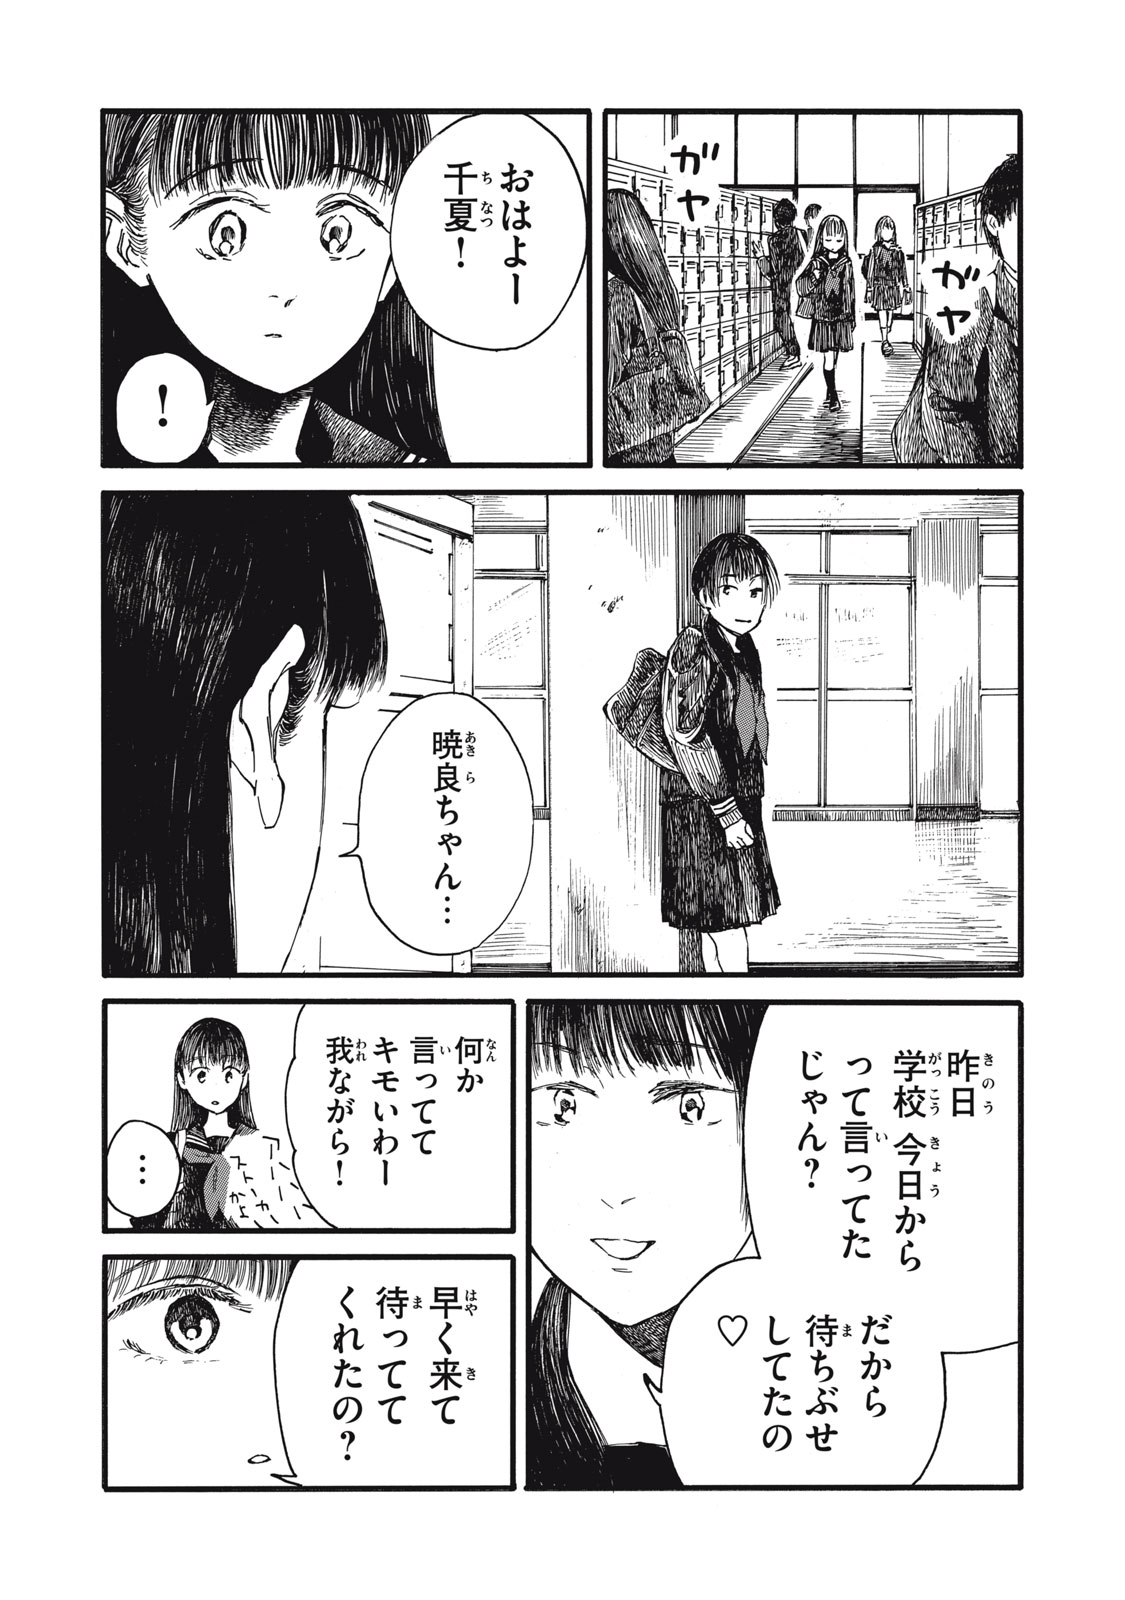 Watashi no Hara no Naka no Bakemono - Chapter 34 - Page 5